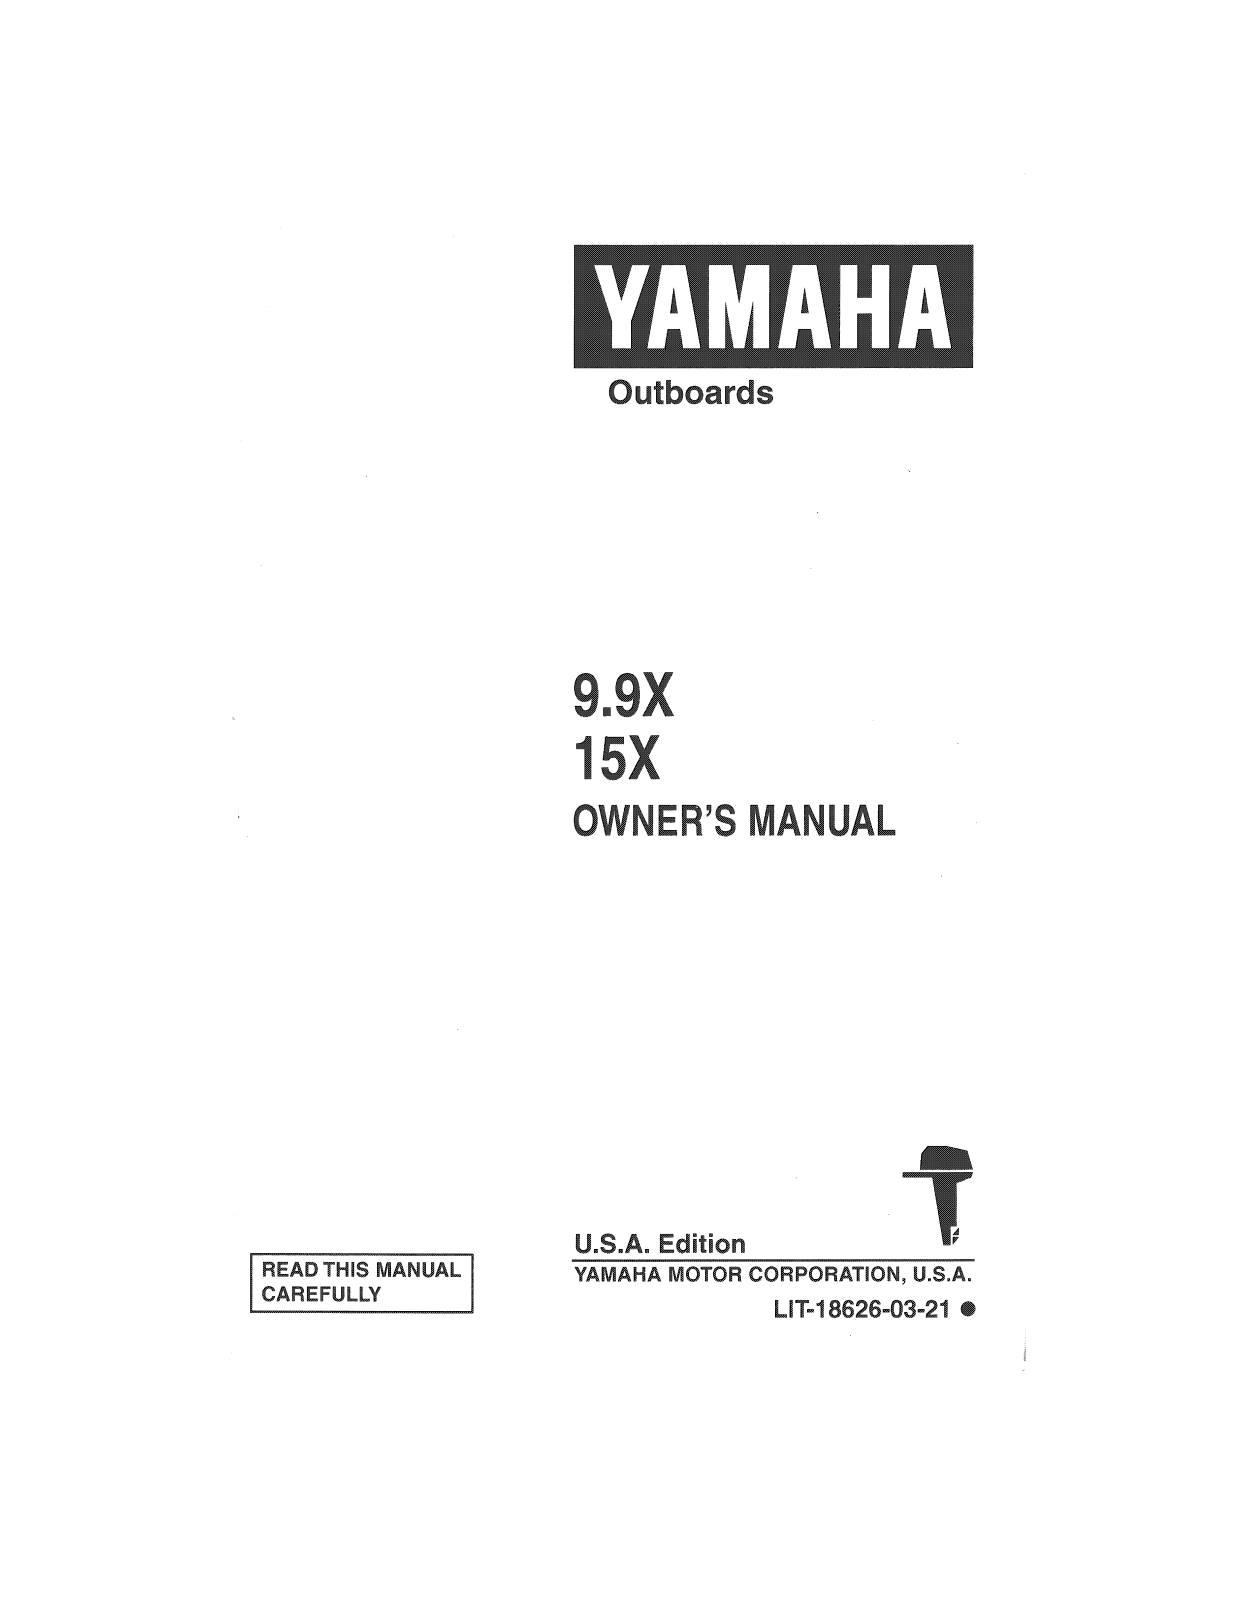 Yamaha 9.9X, 15X Manual